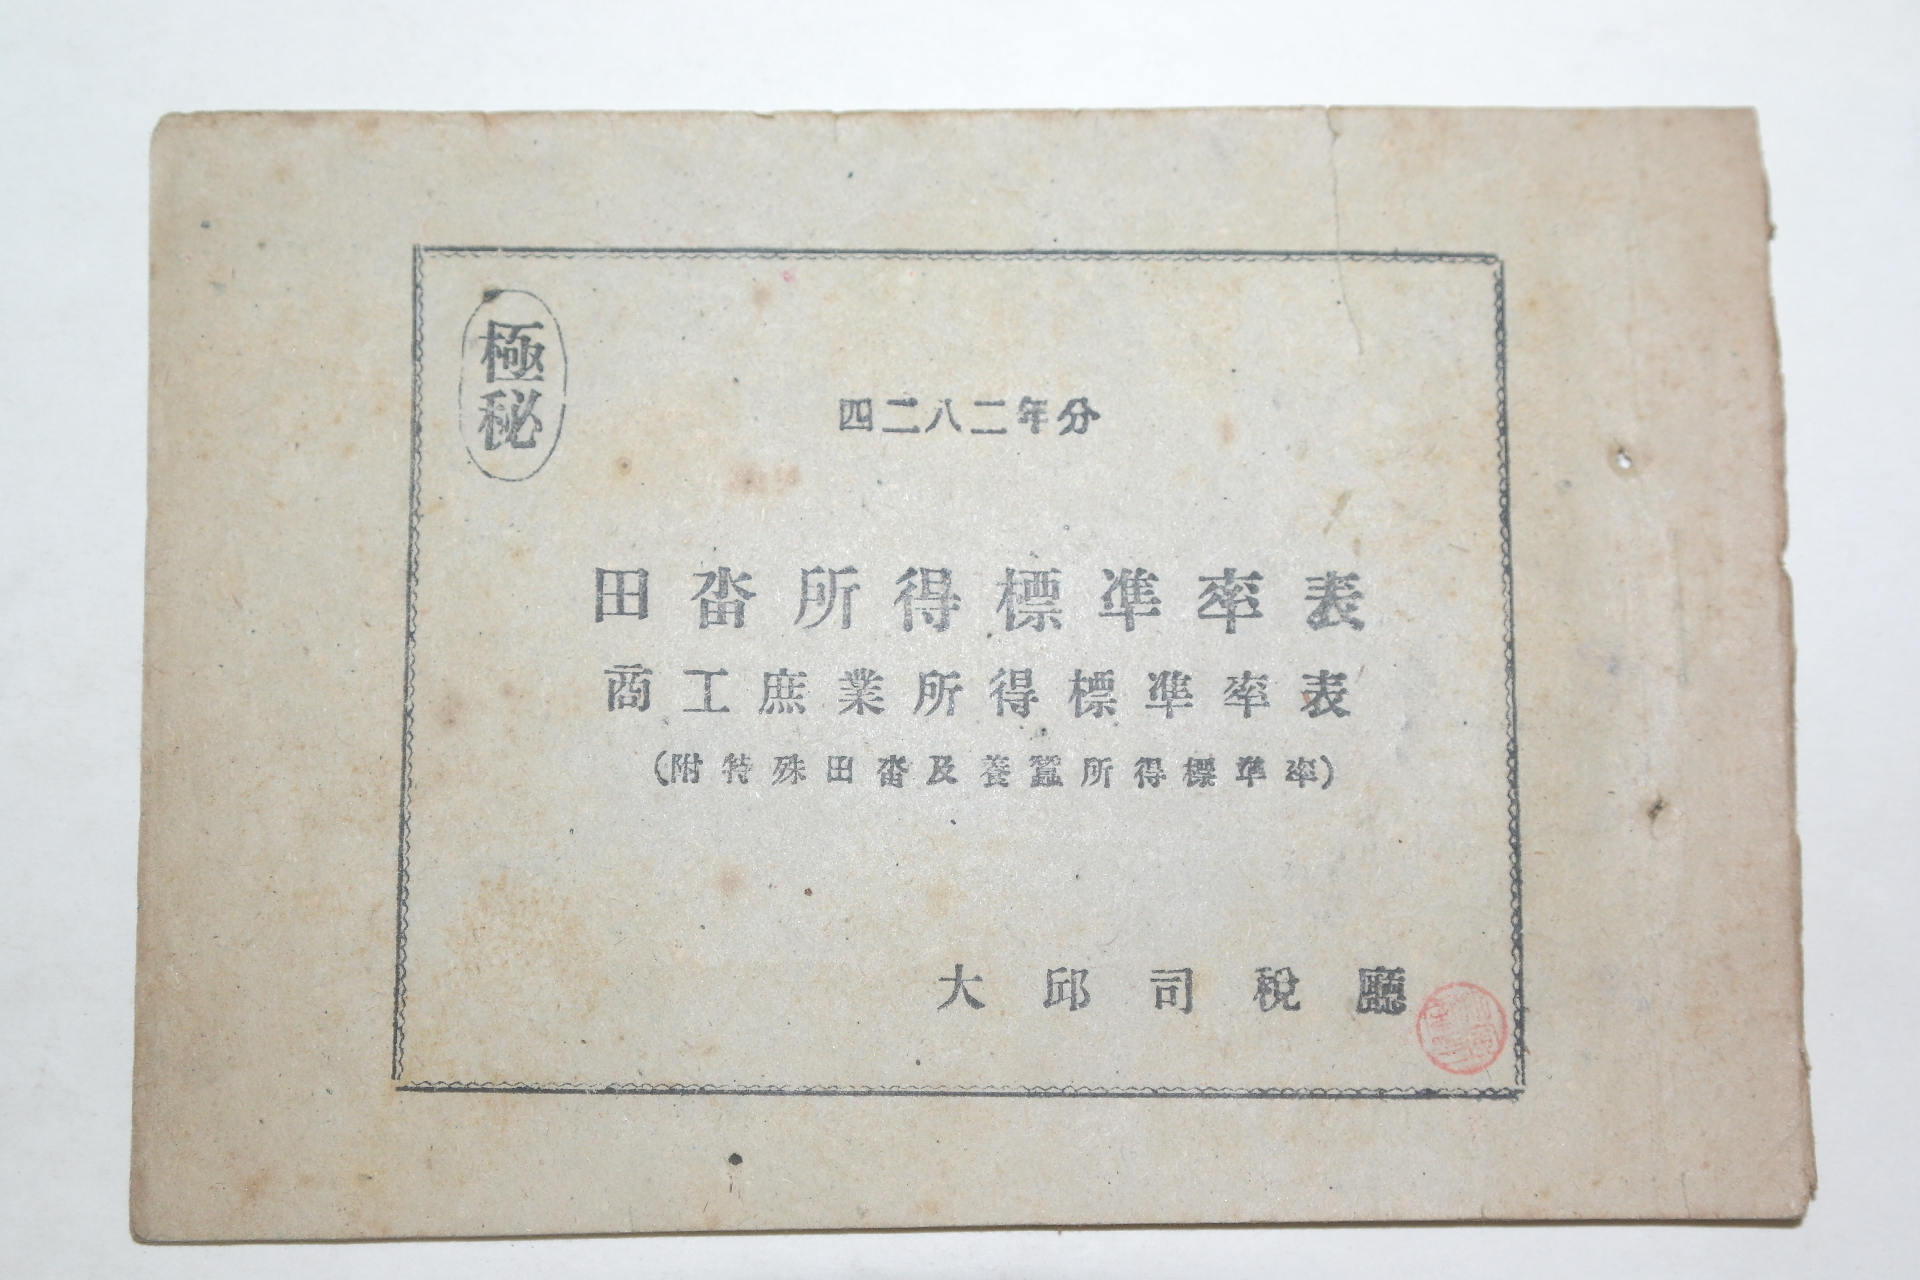 1949년 대구사세청(大邱司稅廳) 극비 전답소득표준율표